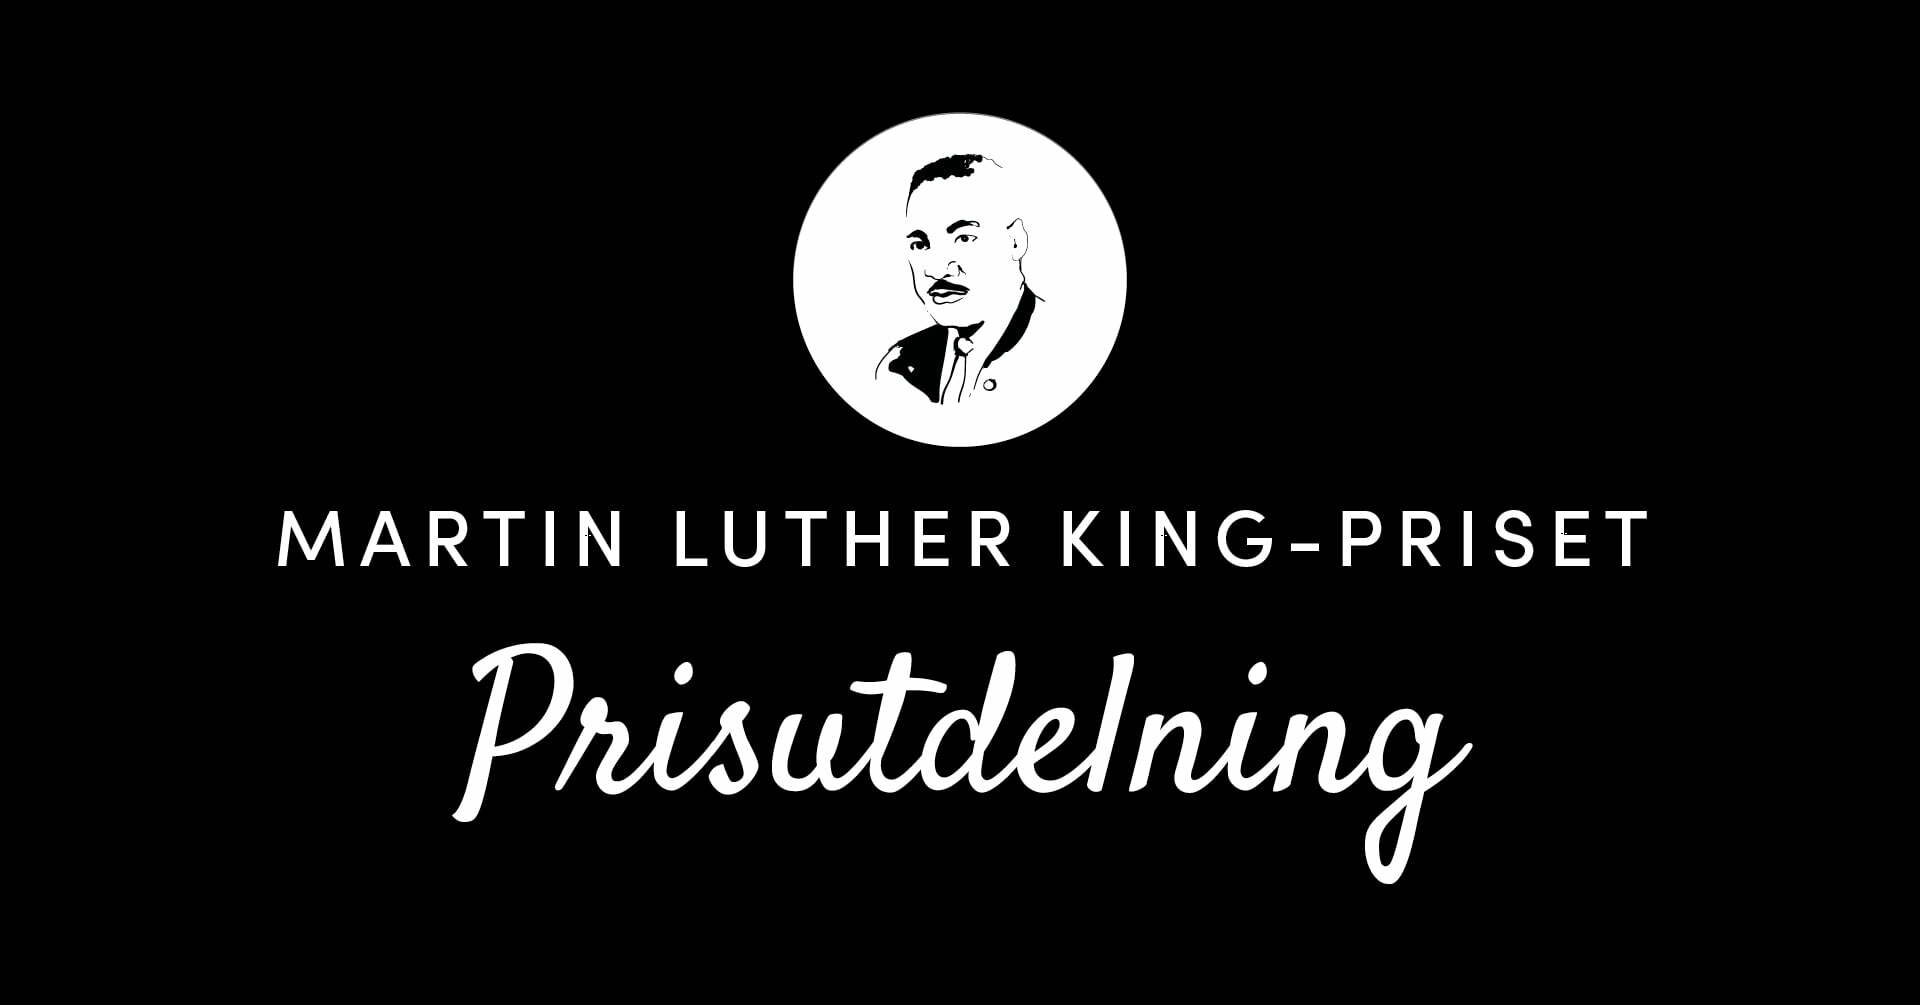 Pristutdelning Martin Luther King-priset